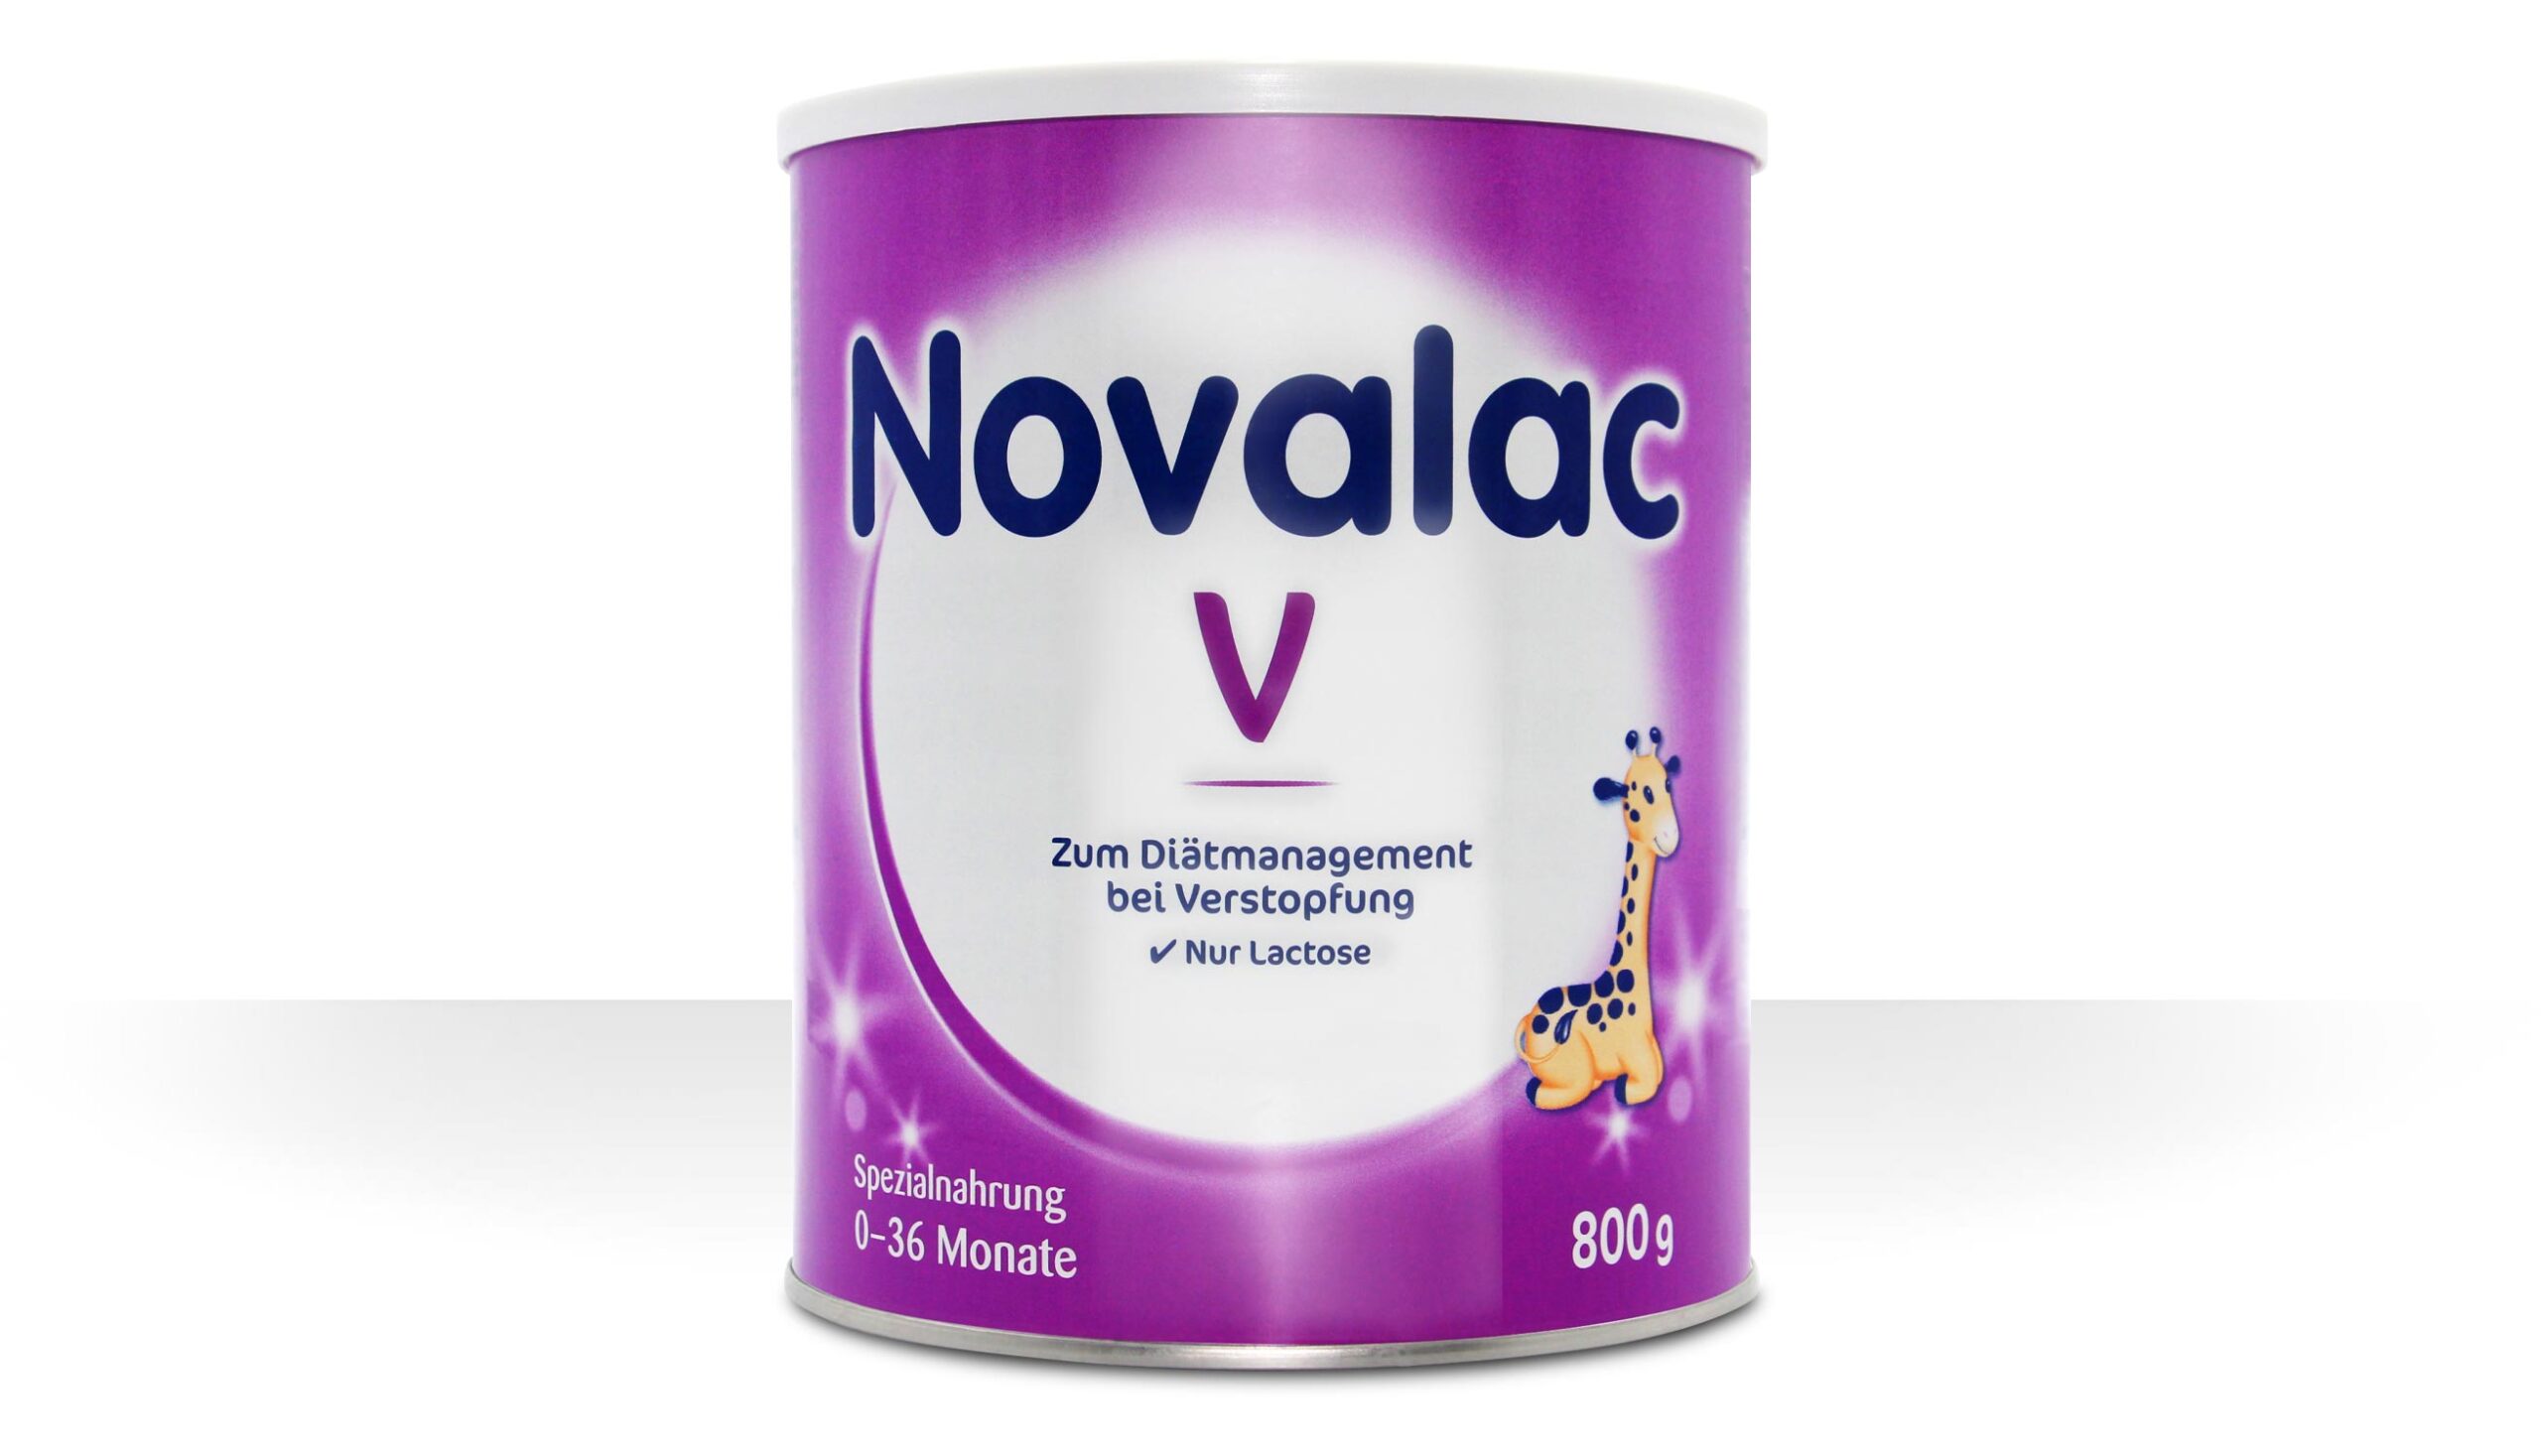 Novalac V